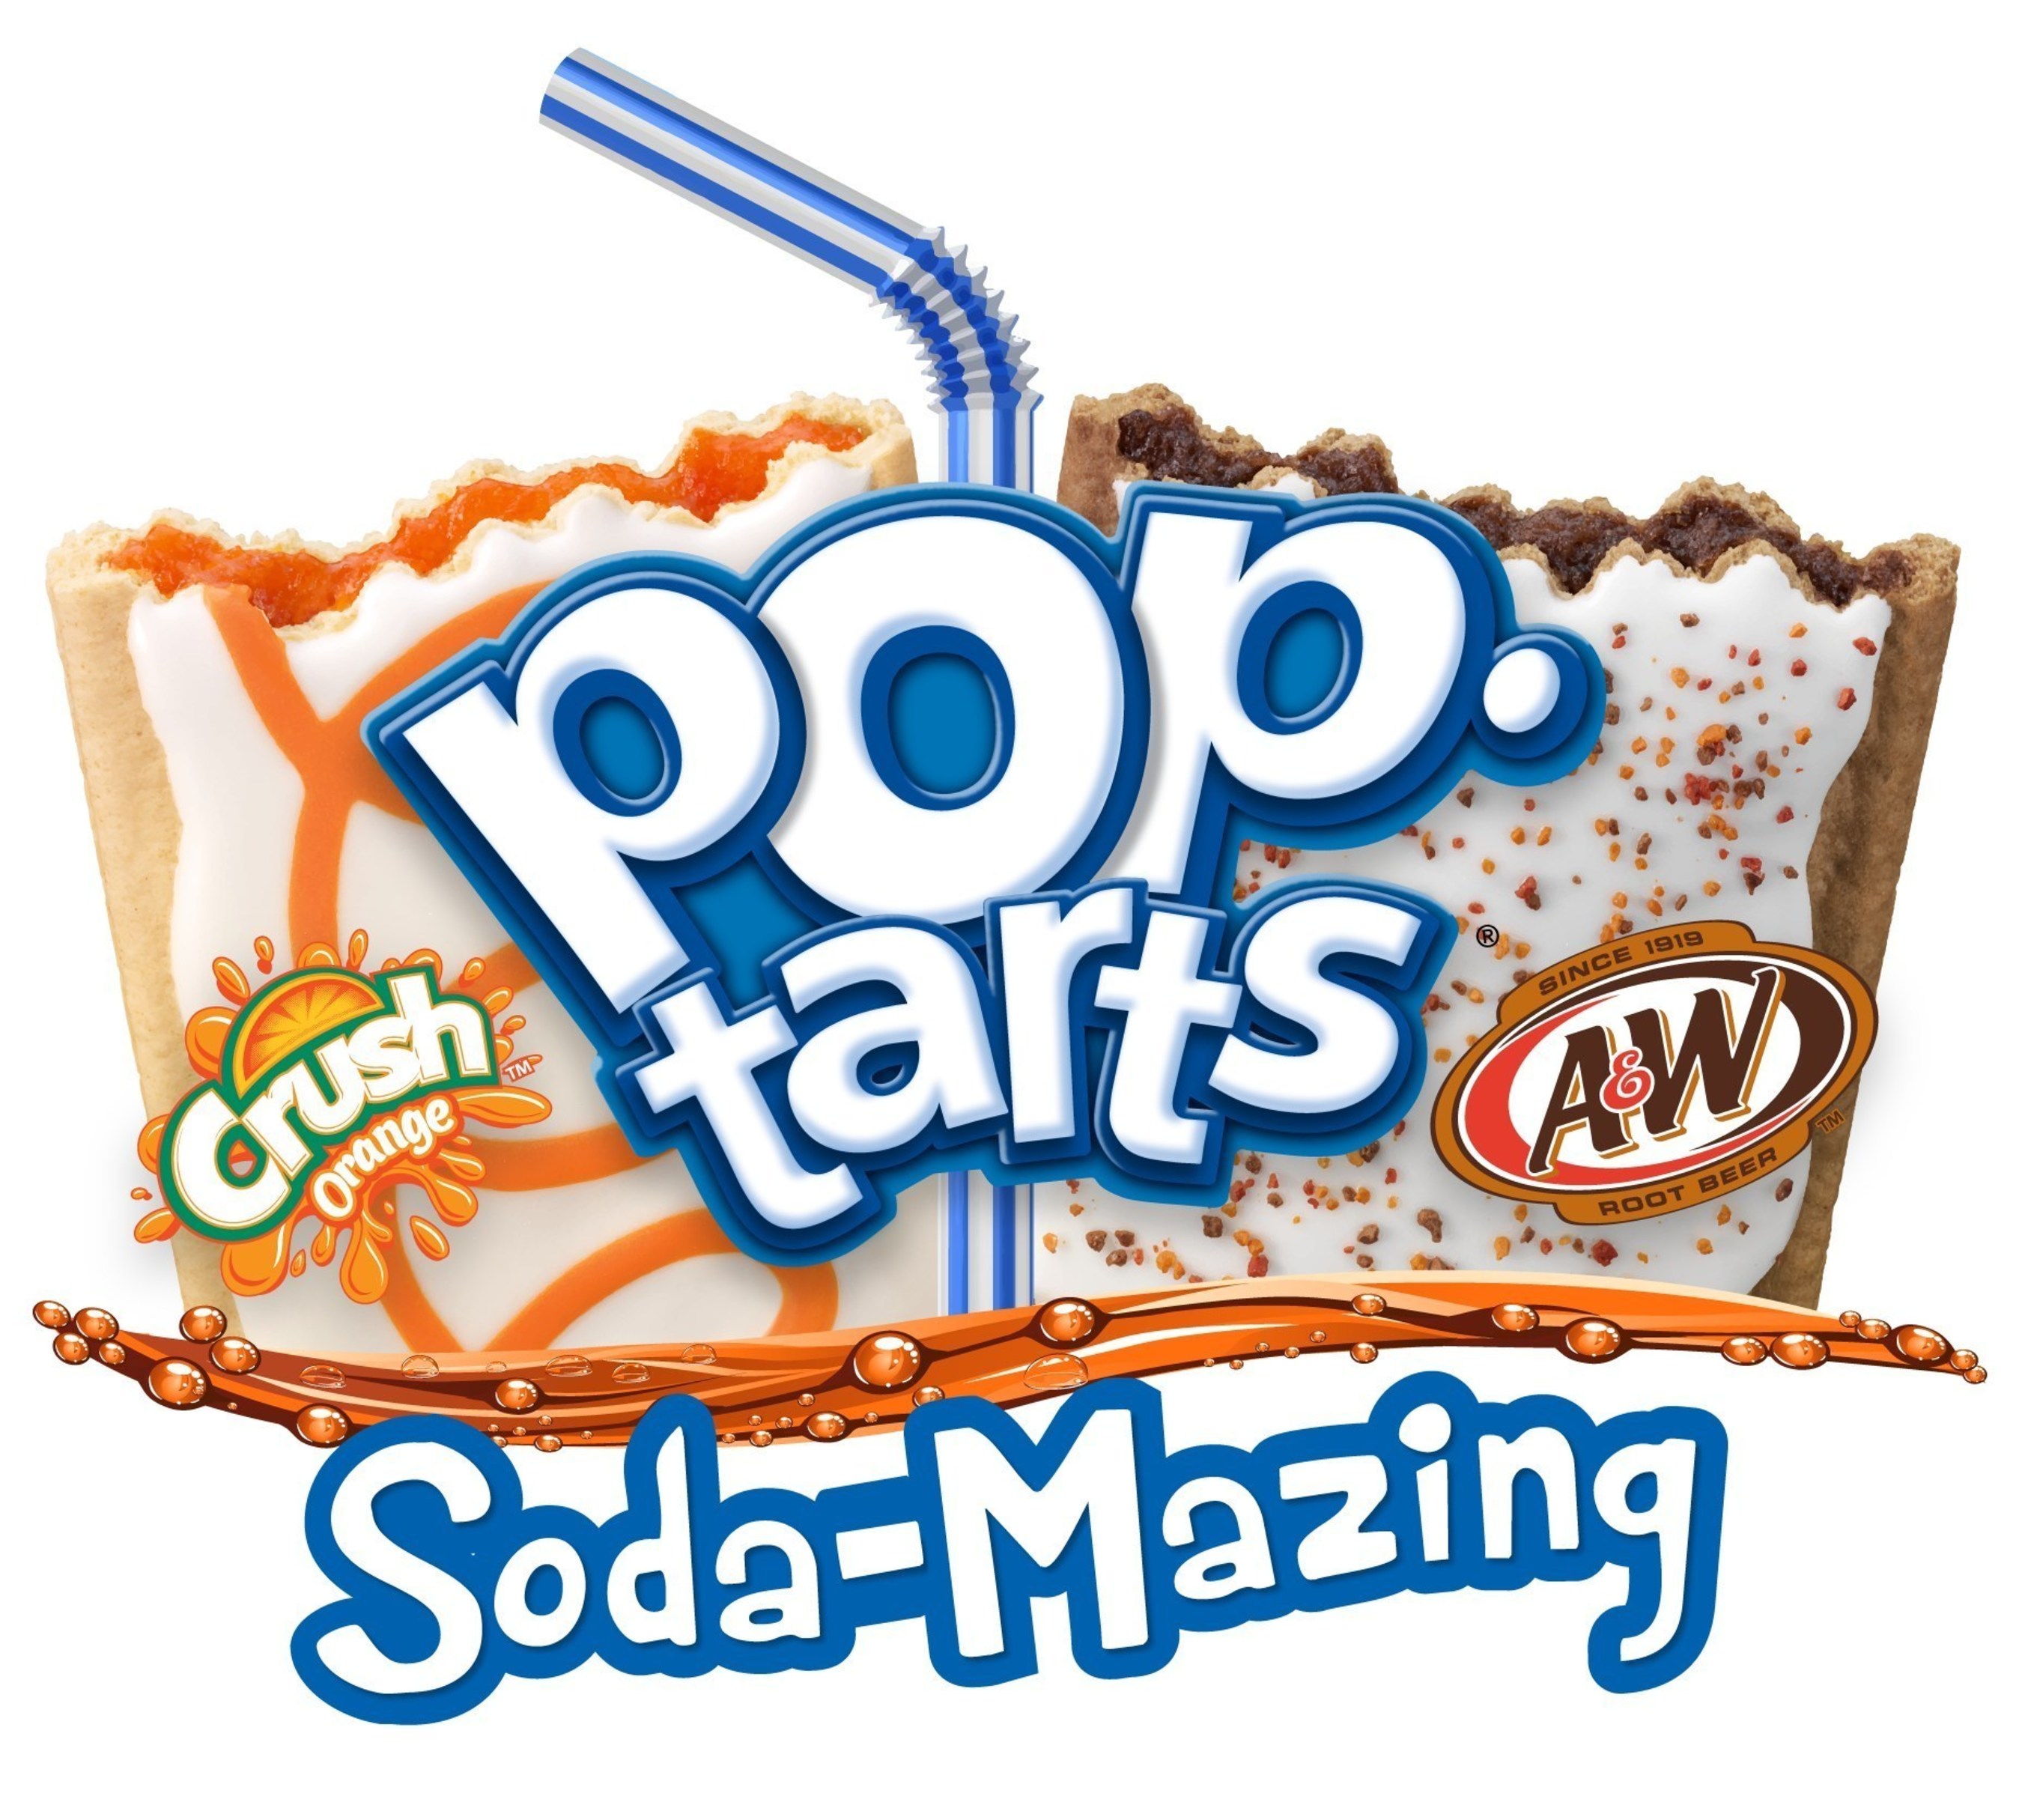 Pop-Tarts(R) Soda-Mazing